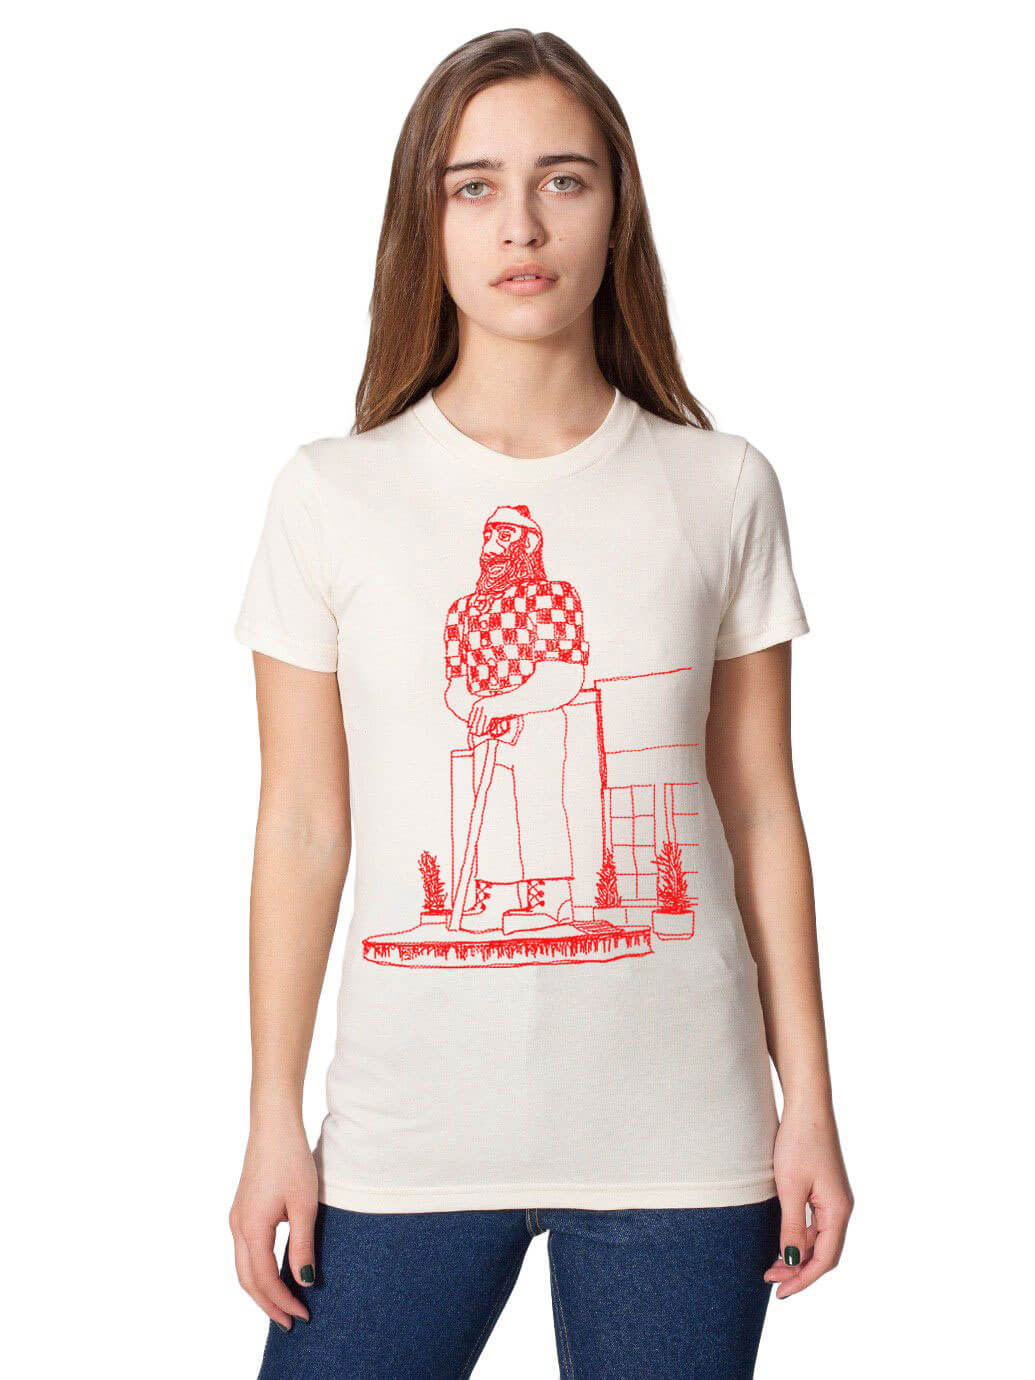 Paul Bunyan Unisex Or Women's Cotton T-shirt-